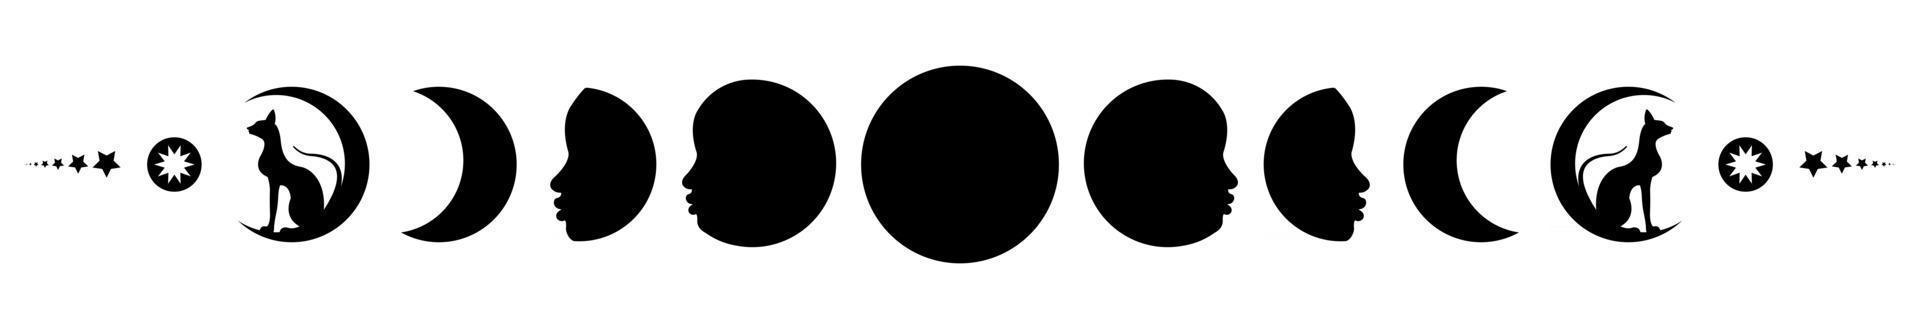 fases de la luna. triple luna y gatos negros, símbolo pagano wiccano vector